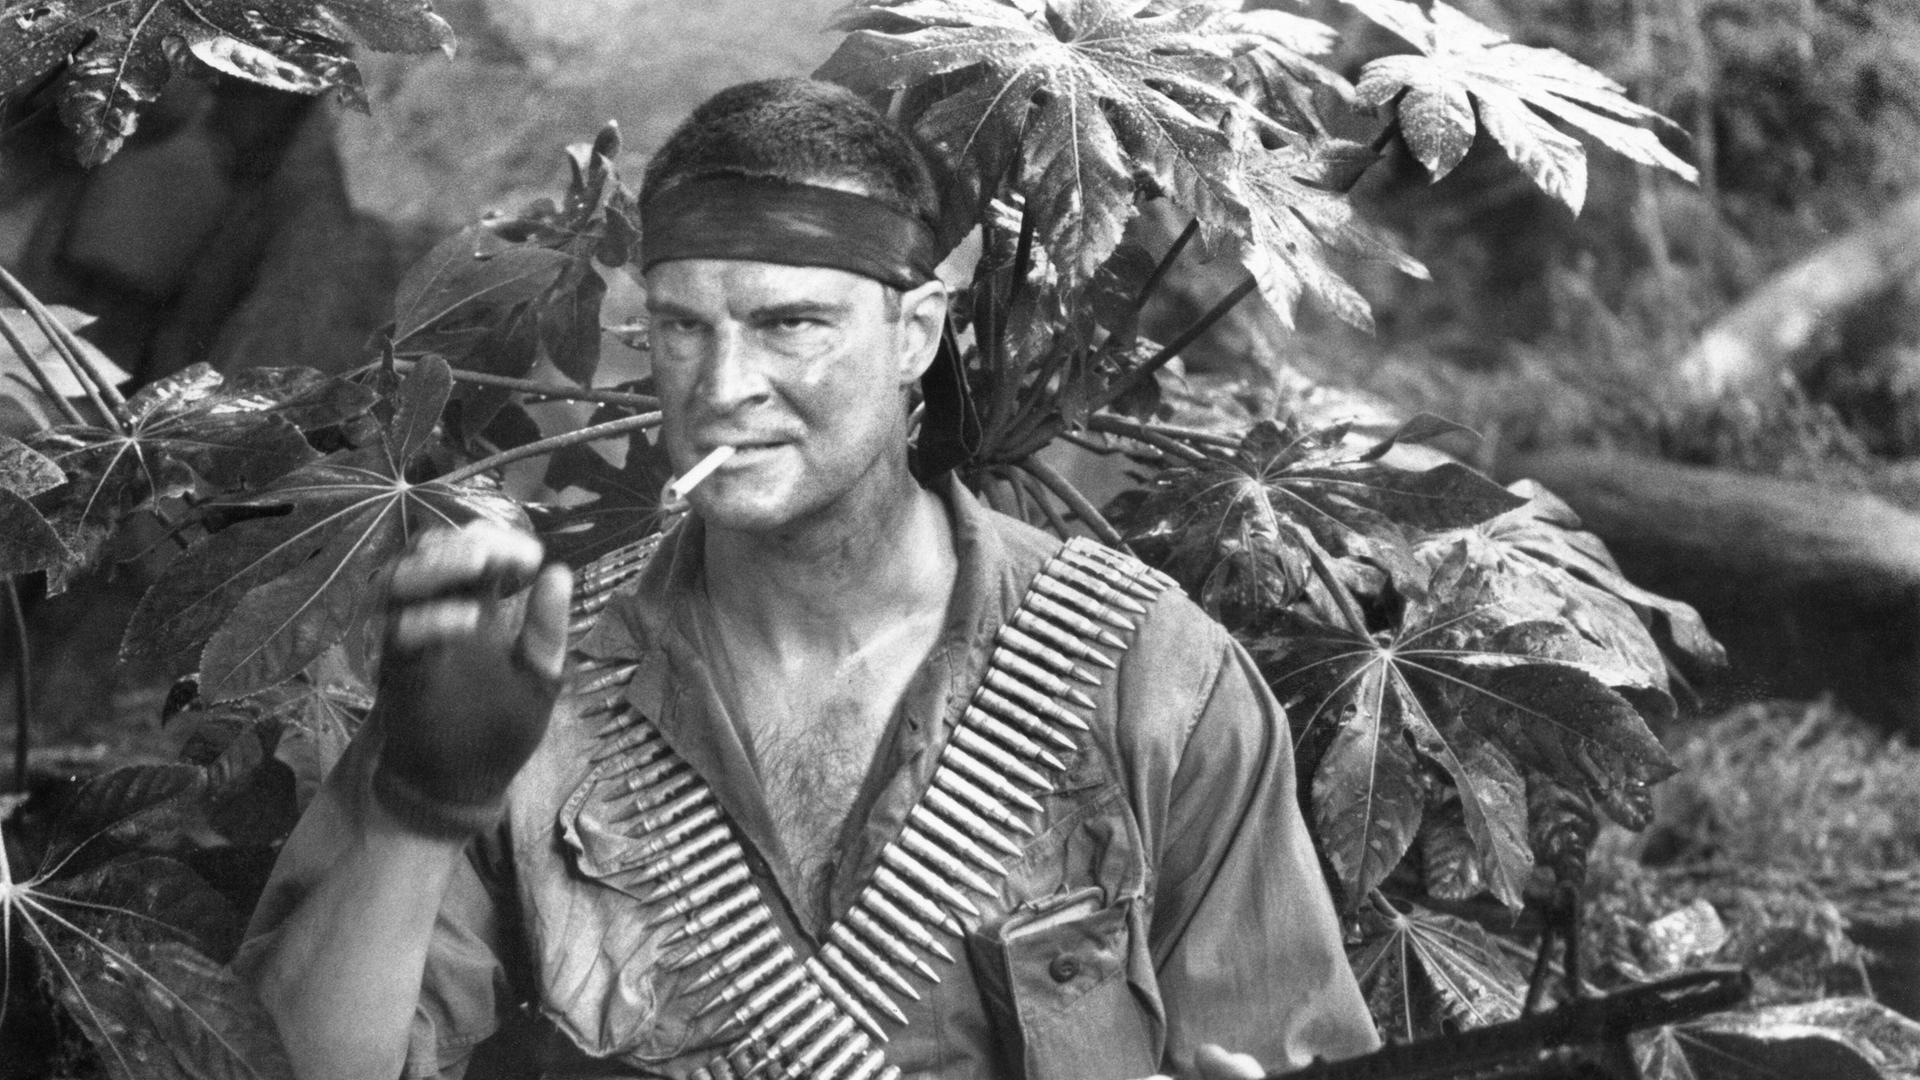 Der Schauspieler Richard Moll zündet sich im Dschungel eine Zigarette an. Er trägt einen Patronengurt und ein Maschinengewehr.